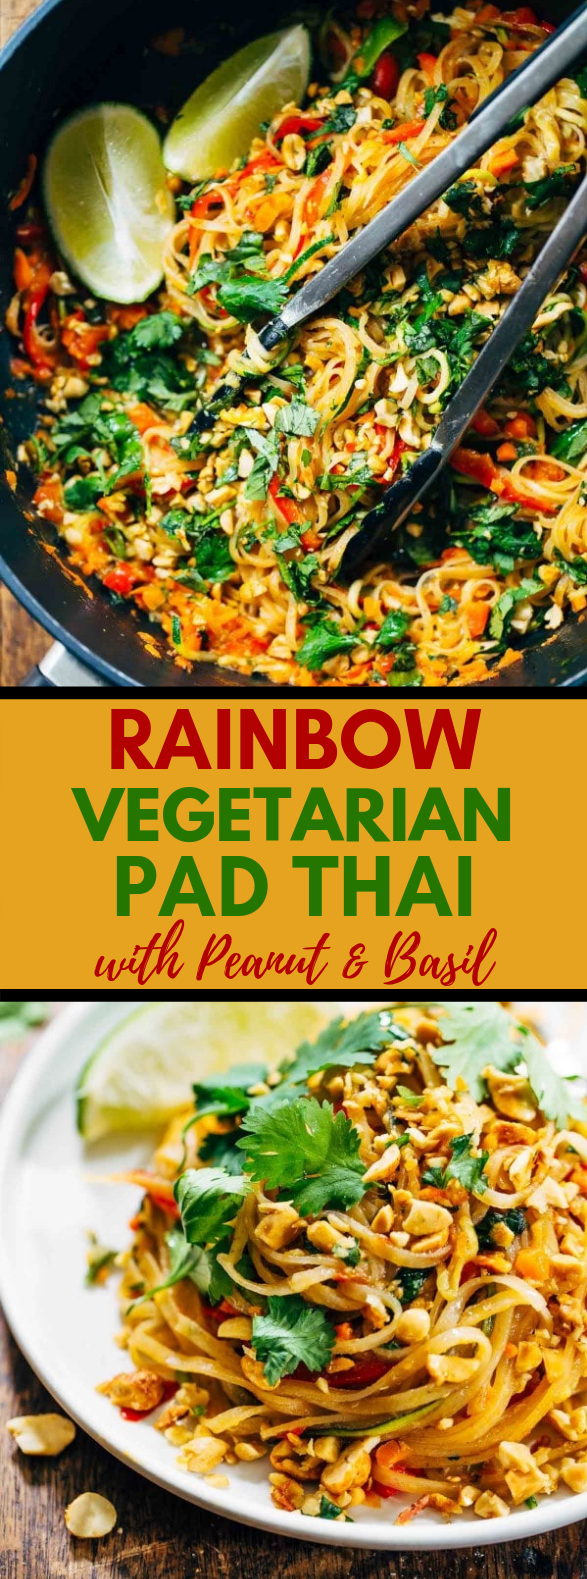 Rainbow Vegetarian Pad Thai with Peanuts and Basil #Food #EasyRecipes